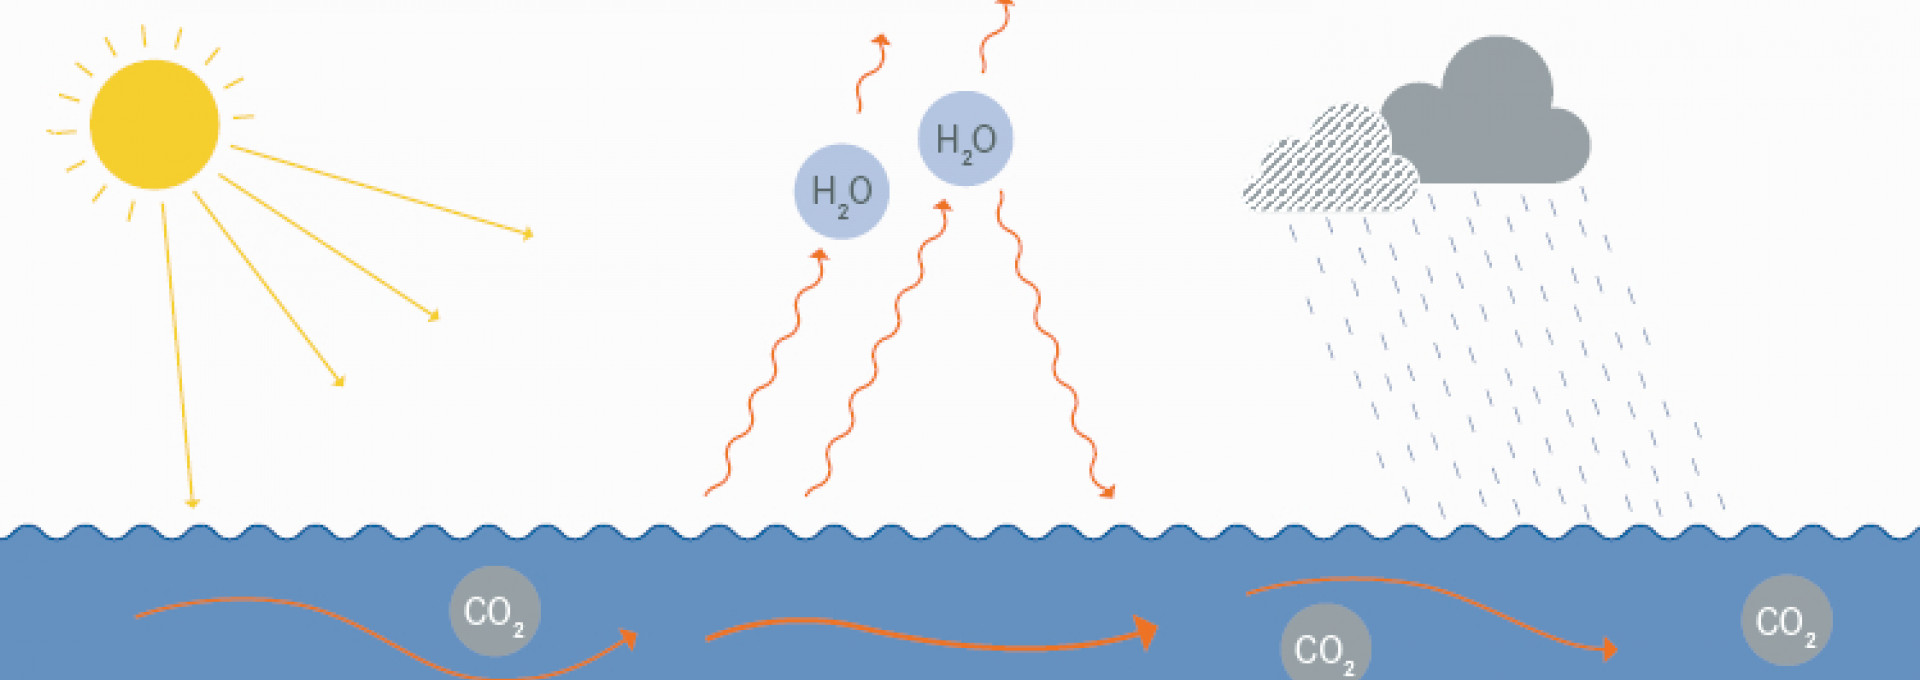 Grafische Darstellung vom Zusammenhang Klima und Ozeane: oben rechts ist eine Sonne, in der Mitte zwei hellblaue Kreise, die Wasserdampf symbolisieren, rechts zwe graue Regenwolken mit Regen, der in den Ozean fällt. Unten ist schematisch de Ozean dargestellt, der Sonnenstrahlen aufnimmt, CO2 im Wasser verteilt, dargestellt durch orange Pfeile und verdunstetes Wasser als Wasserdampf abgibt, symbolisiert durch orangene, gewellte Pfeile.